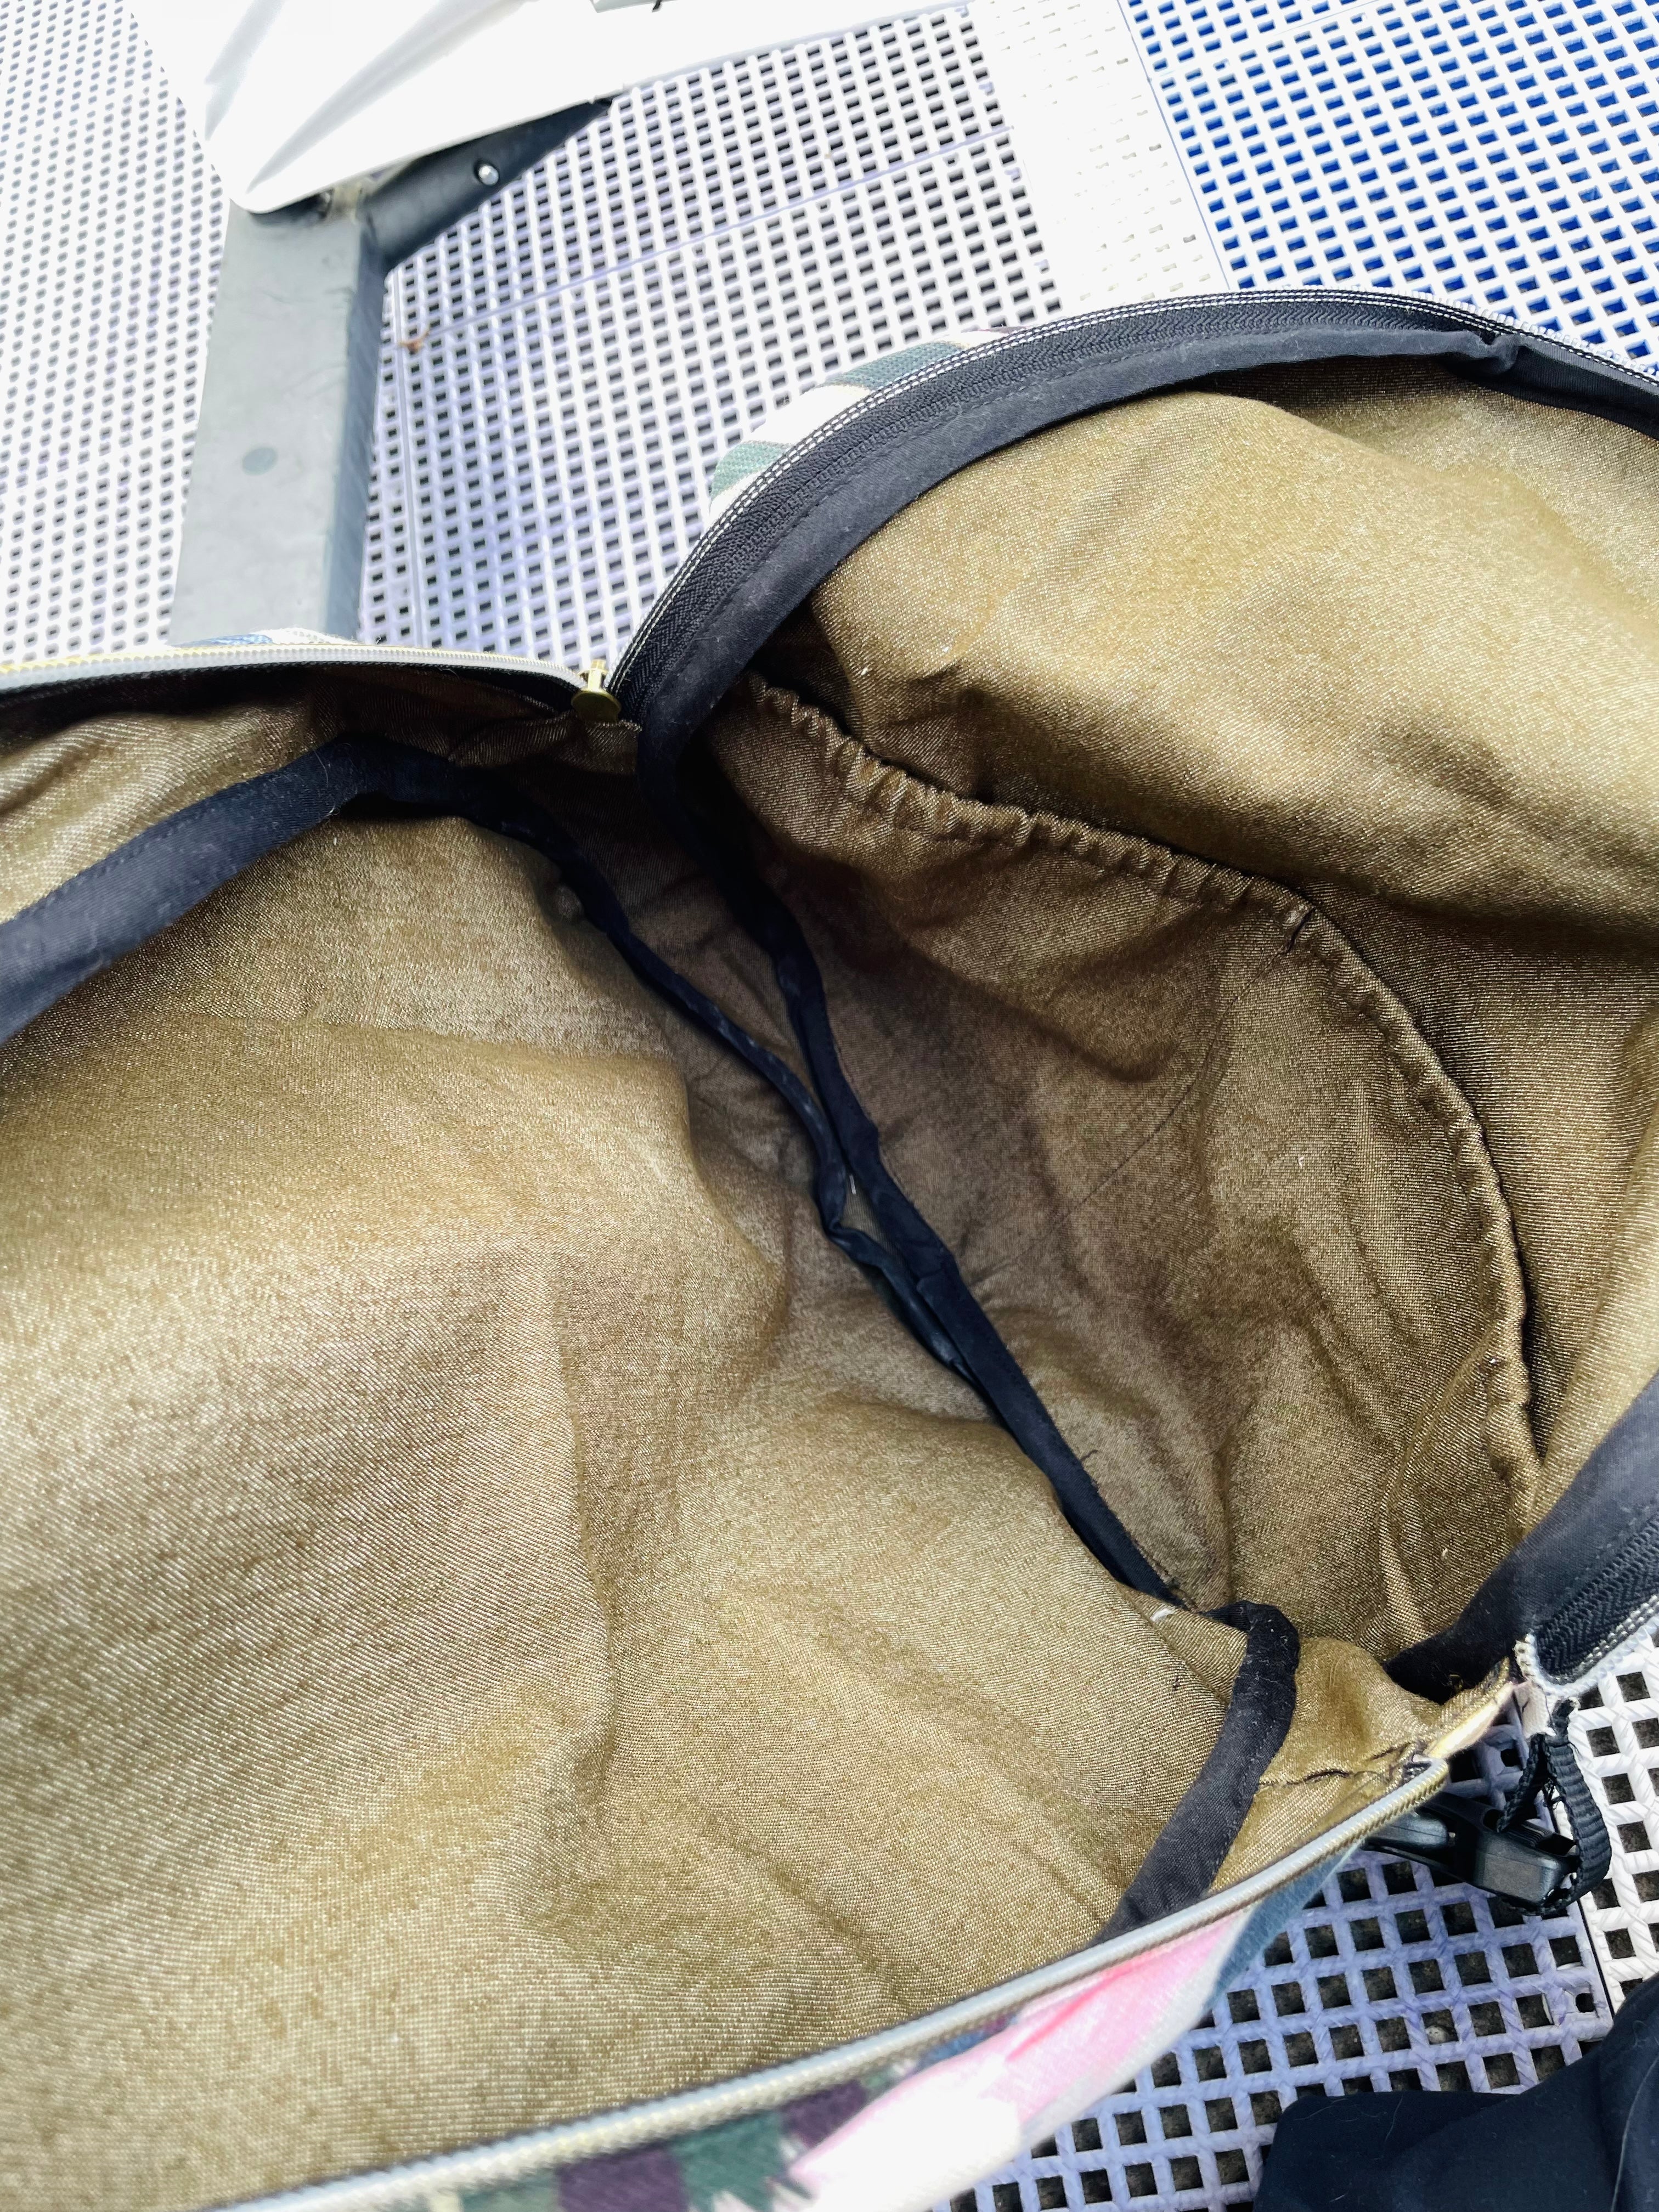 omori' Cotton Drawstring Bag